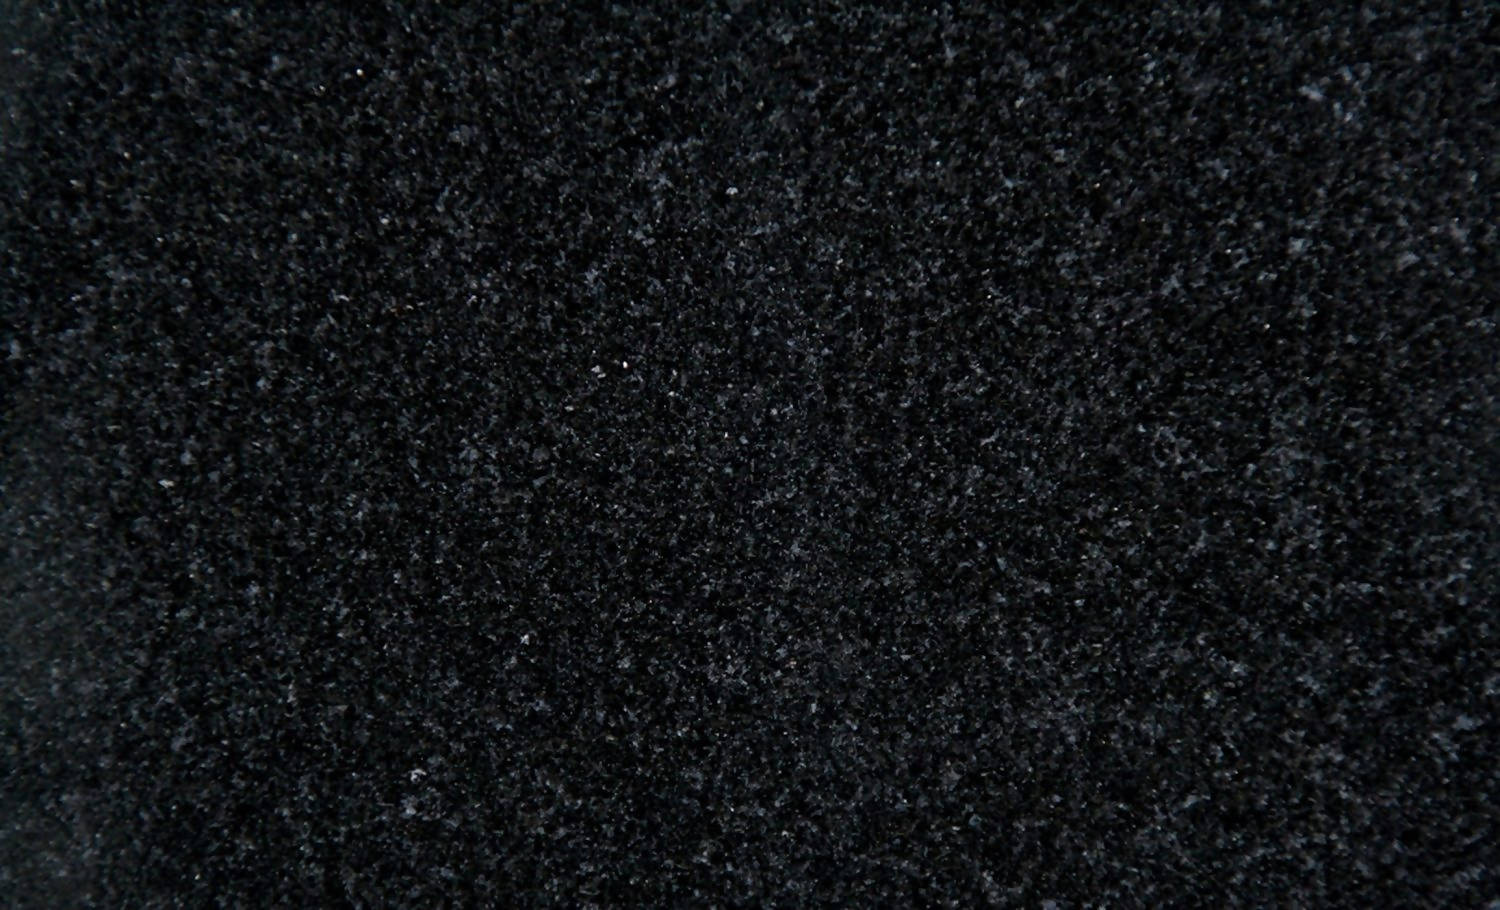 ZIM BLACK GRANITE,Granite,Work-Tops,www.work-tops.com